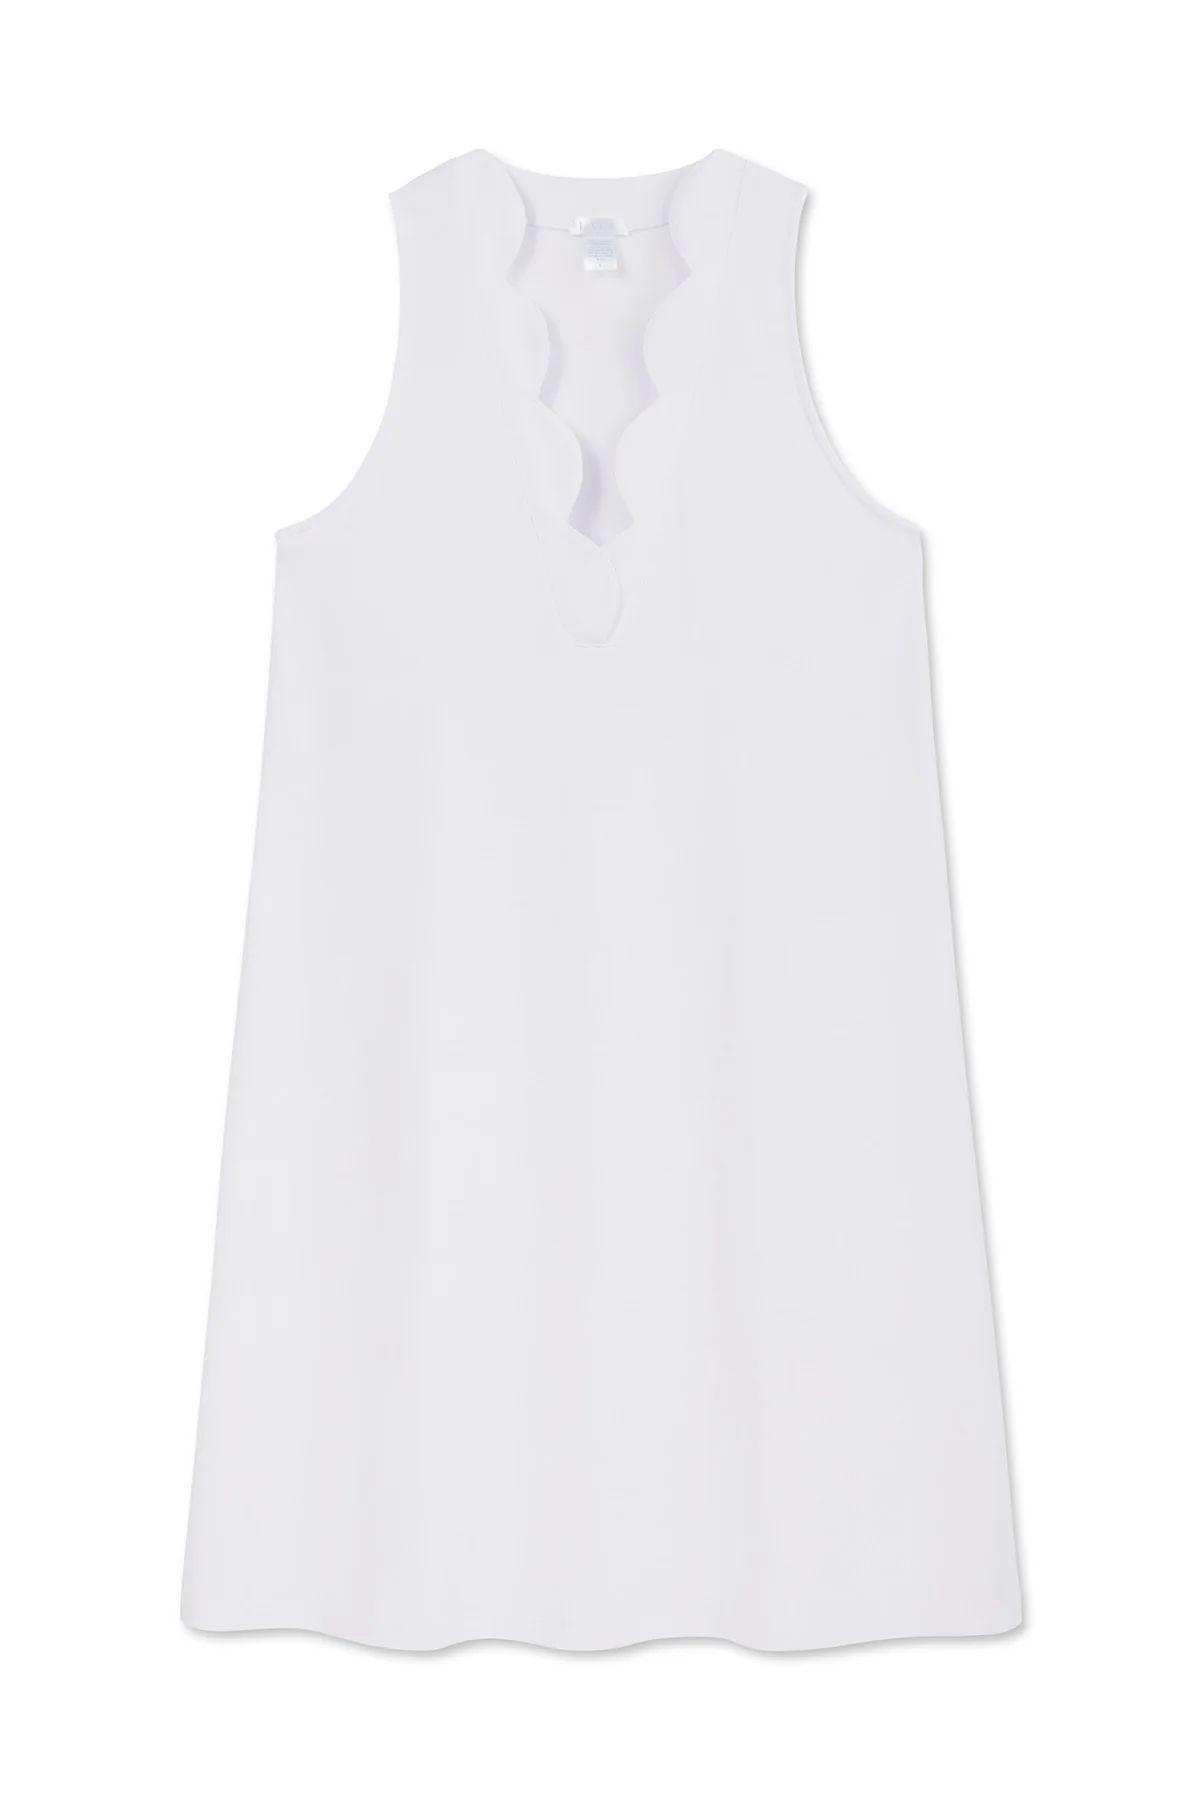 Pima Scallop Tank Gown in White | Lake Pajamas